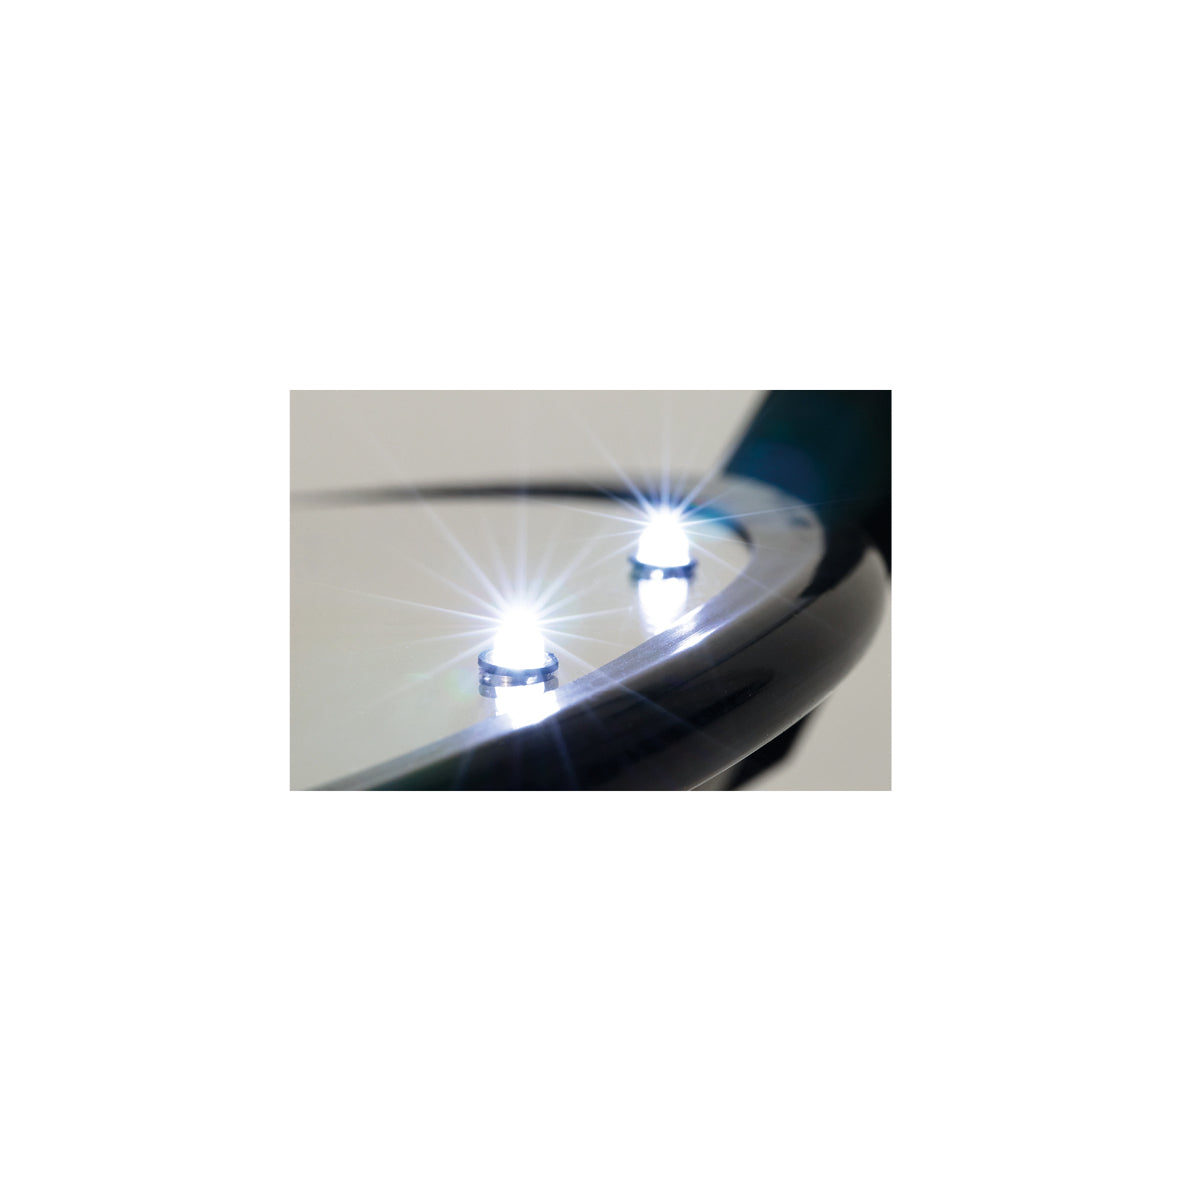 Kontrollspiegel Inspection, Acryl, 20/40 cm, mit 6 LED-Leuchten und Rädern